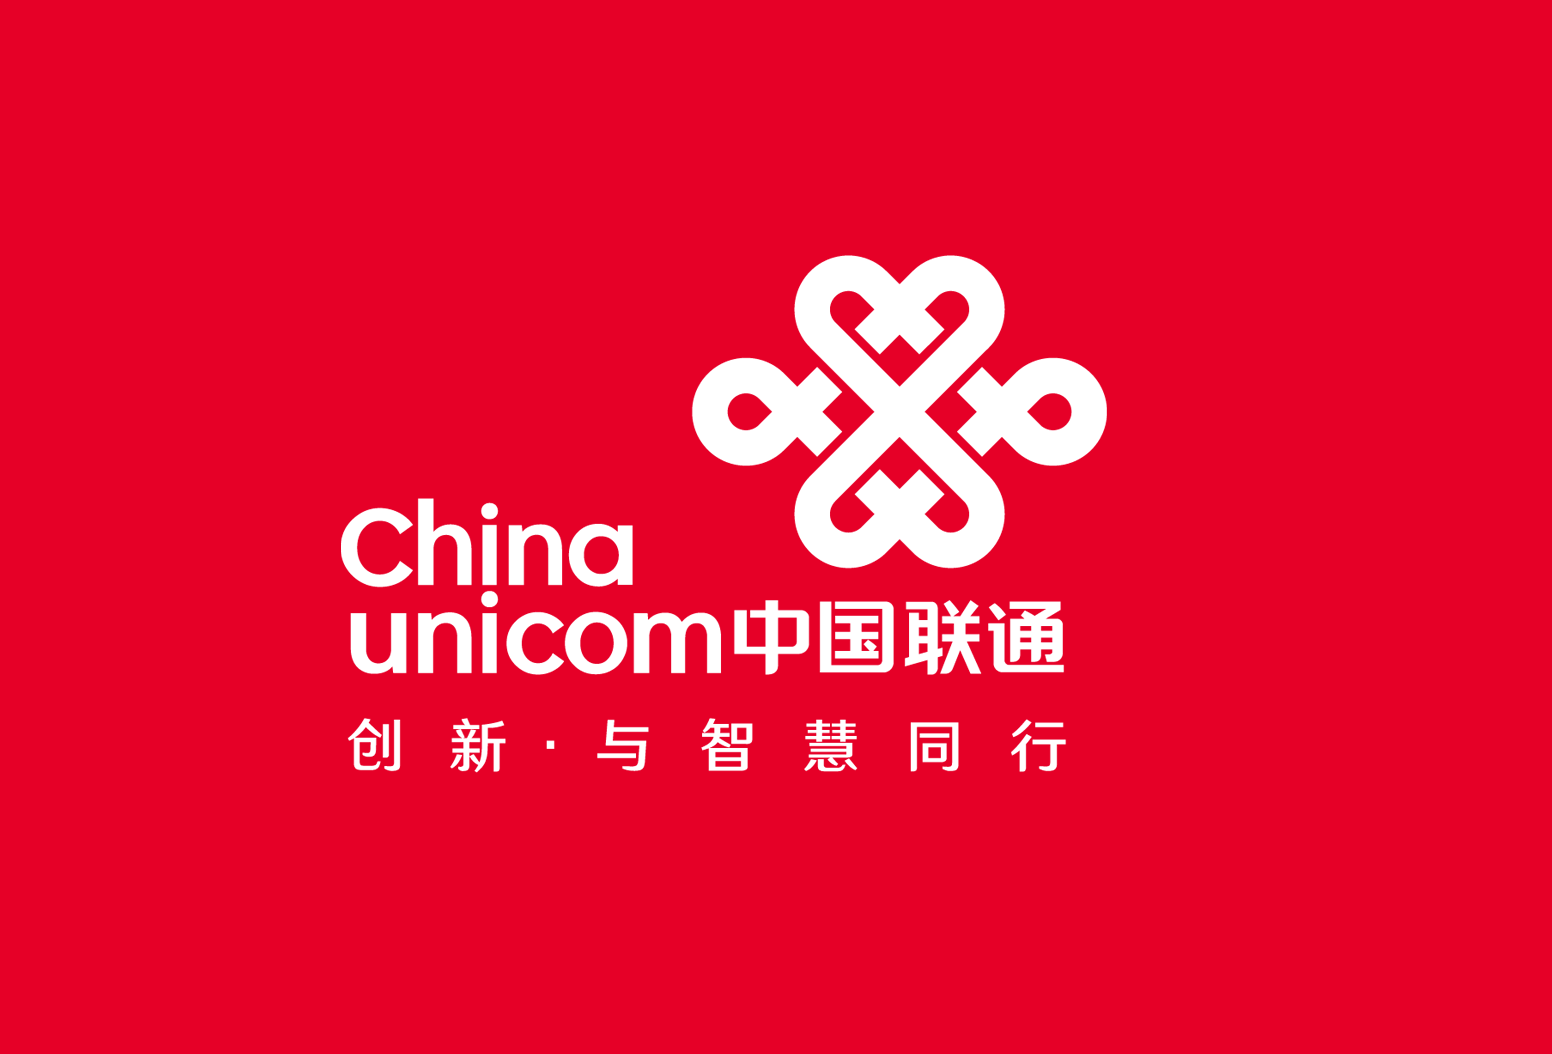 中国联通更新logo,颜色和口号都变了!